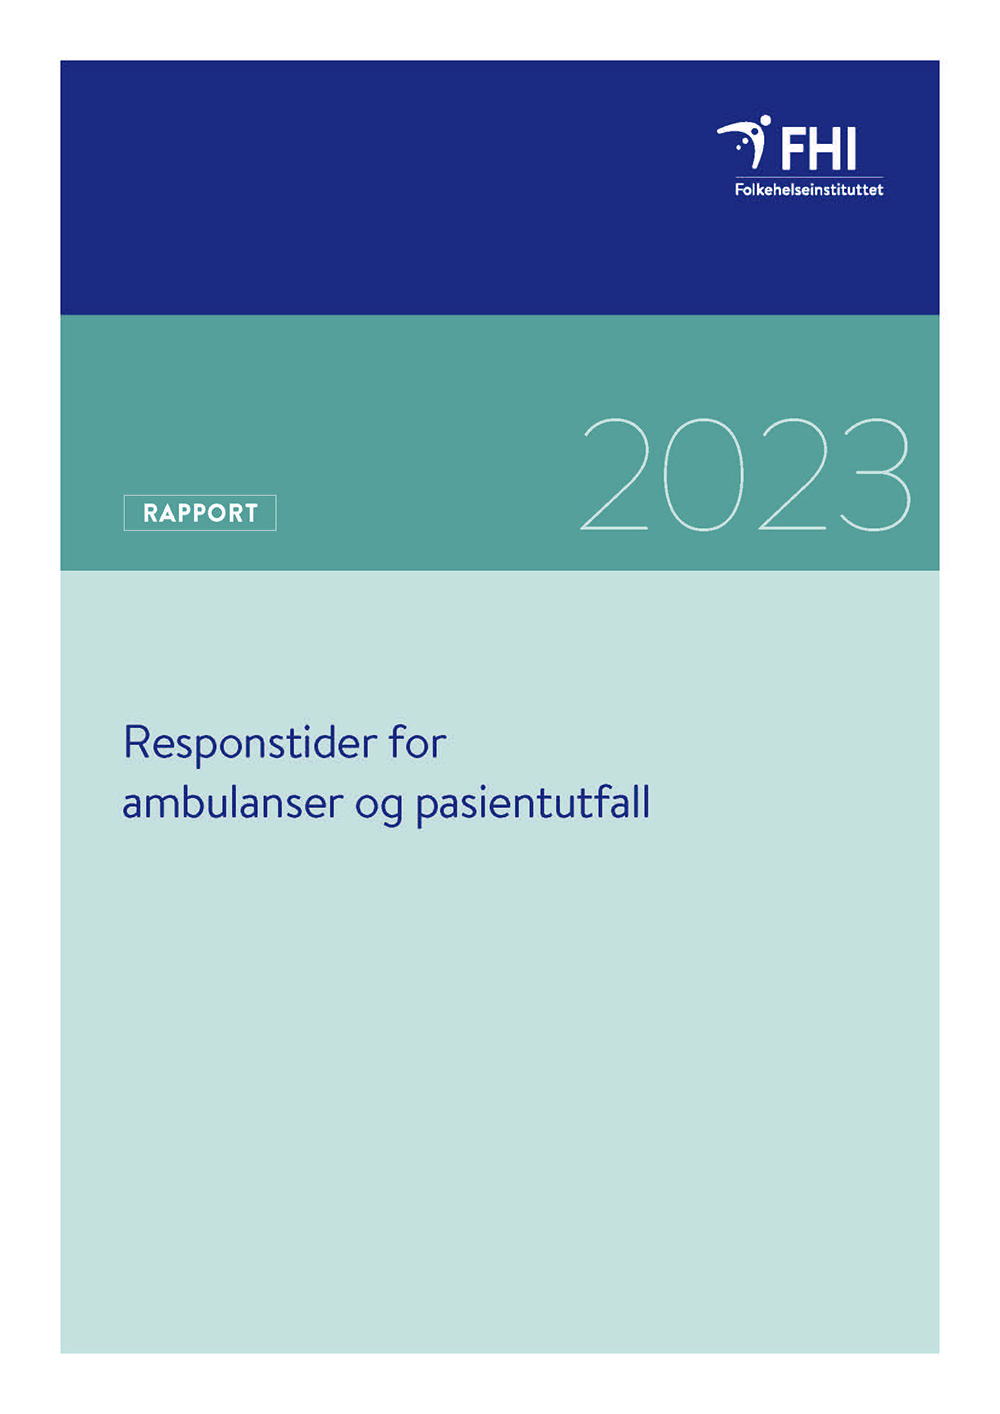 Forside ambulanser og pasientutfall Rapport 2023.jpg